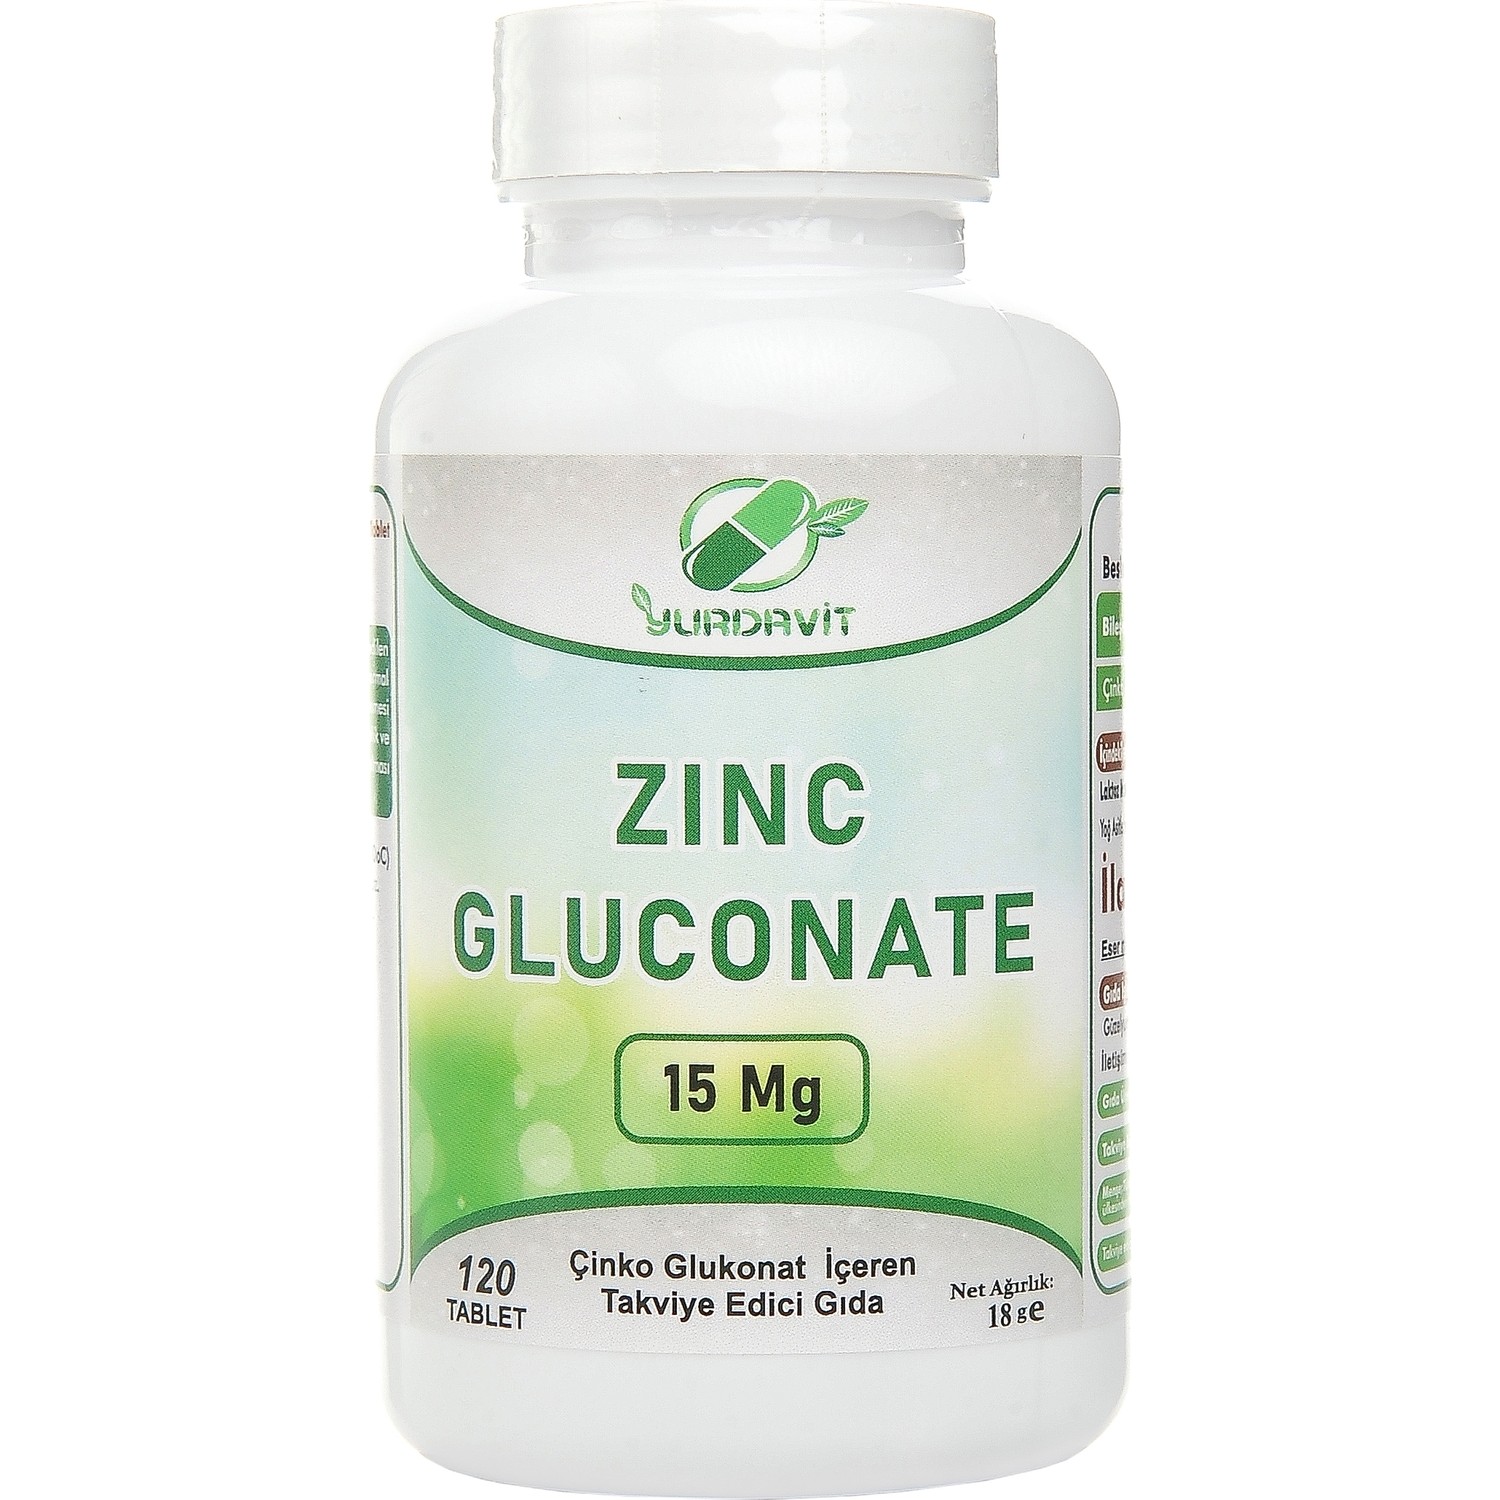 Zinc gluconate. Глюконат цинка. Цинка глюконат леденцы. Now цинк глюконат.